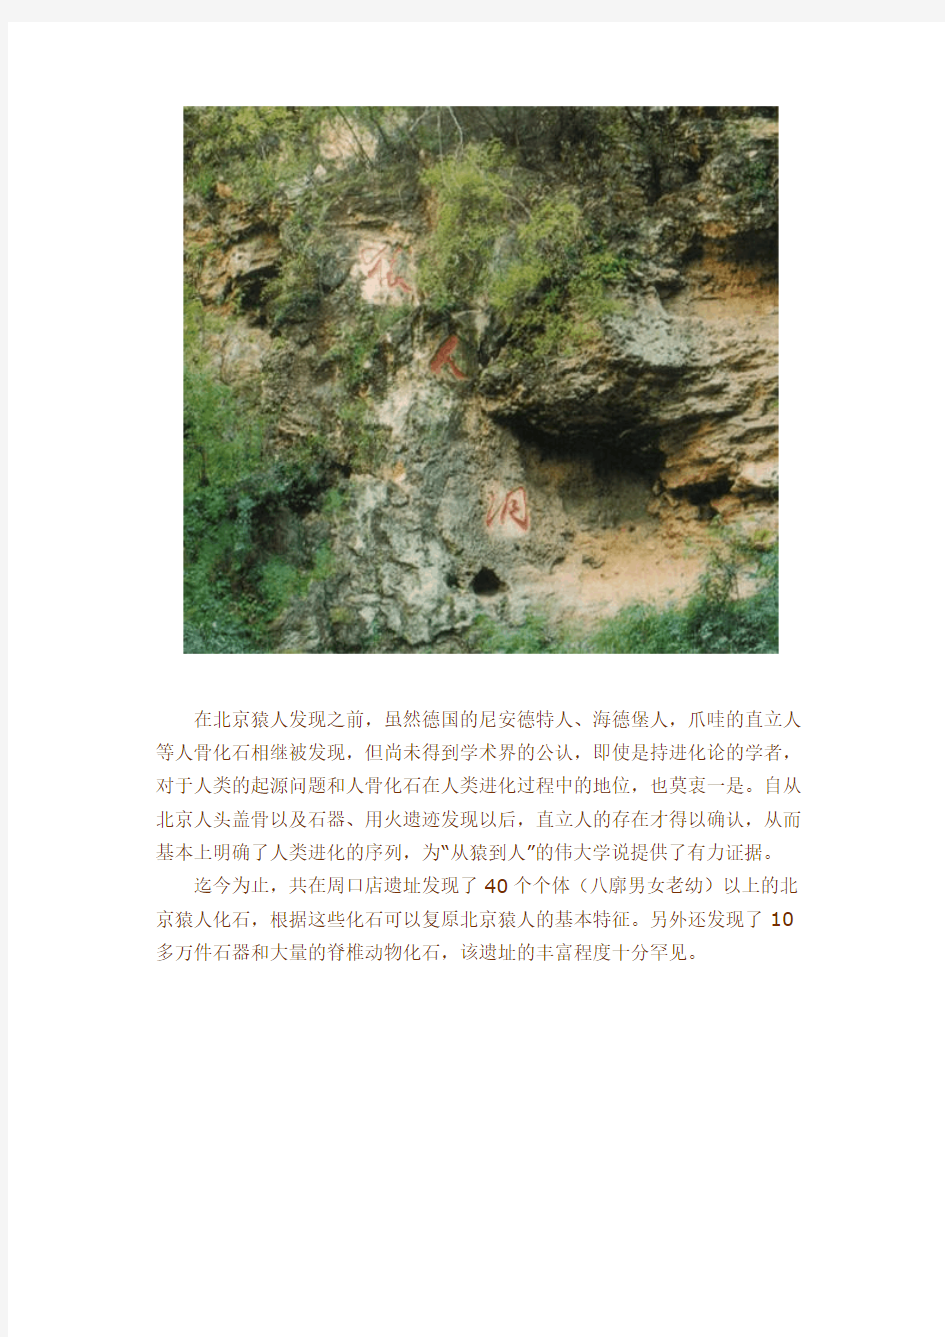 北京人头盖骨化石发现的意义-推荐下载